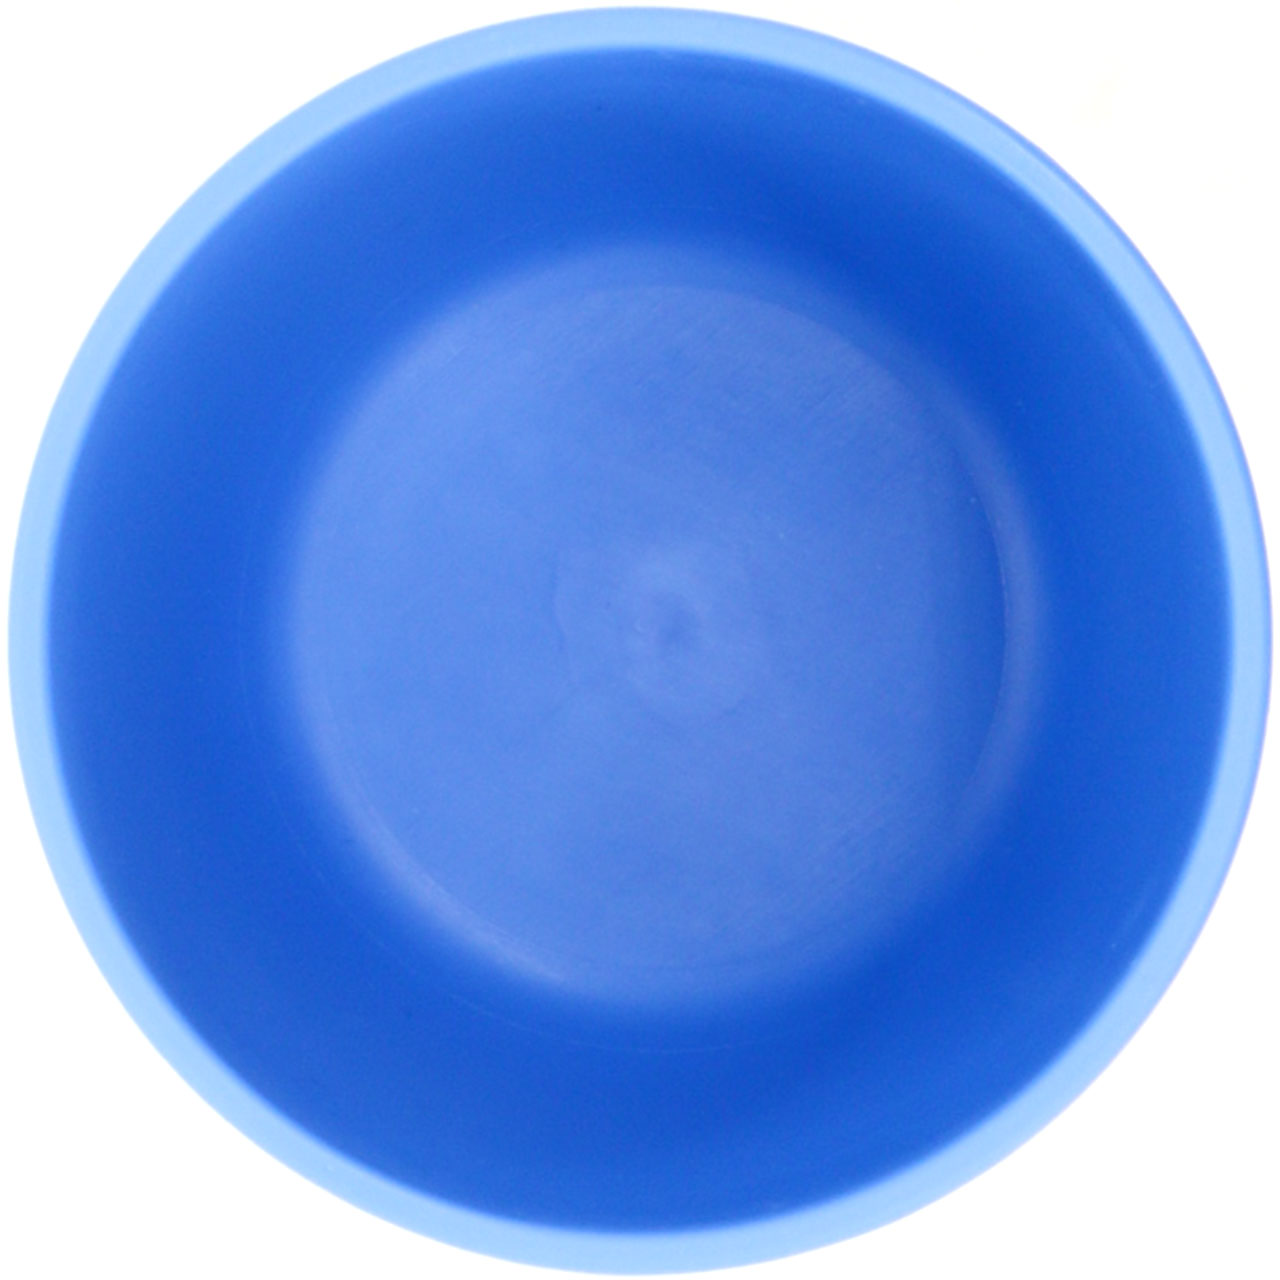 Becher blau 200 ml – bruchsicher & frei von Weichmachern